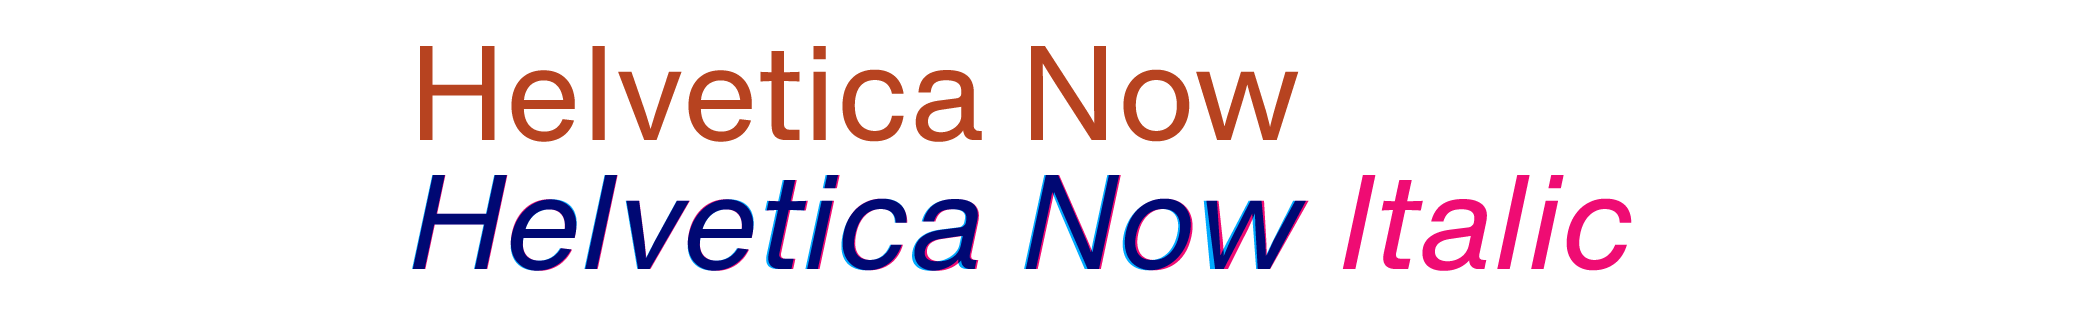 Helvetica Now 罗马体几何倾斜（蓝色）和意大利体（洋红）的叠图对比，边缘可见极其微妙的视觉调整